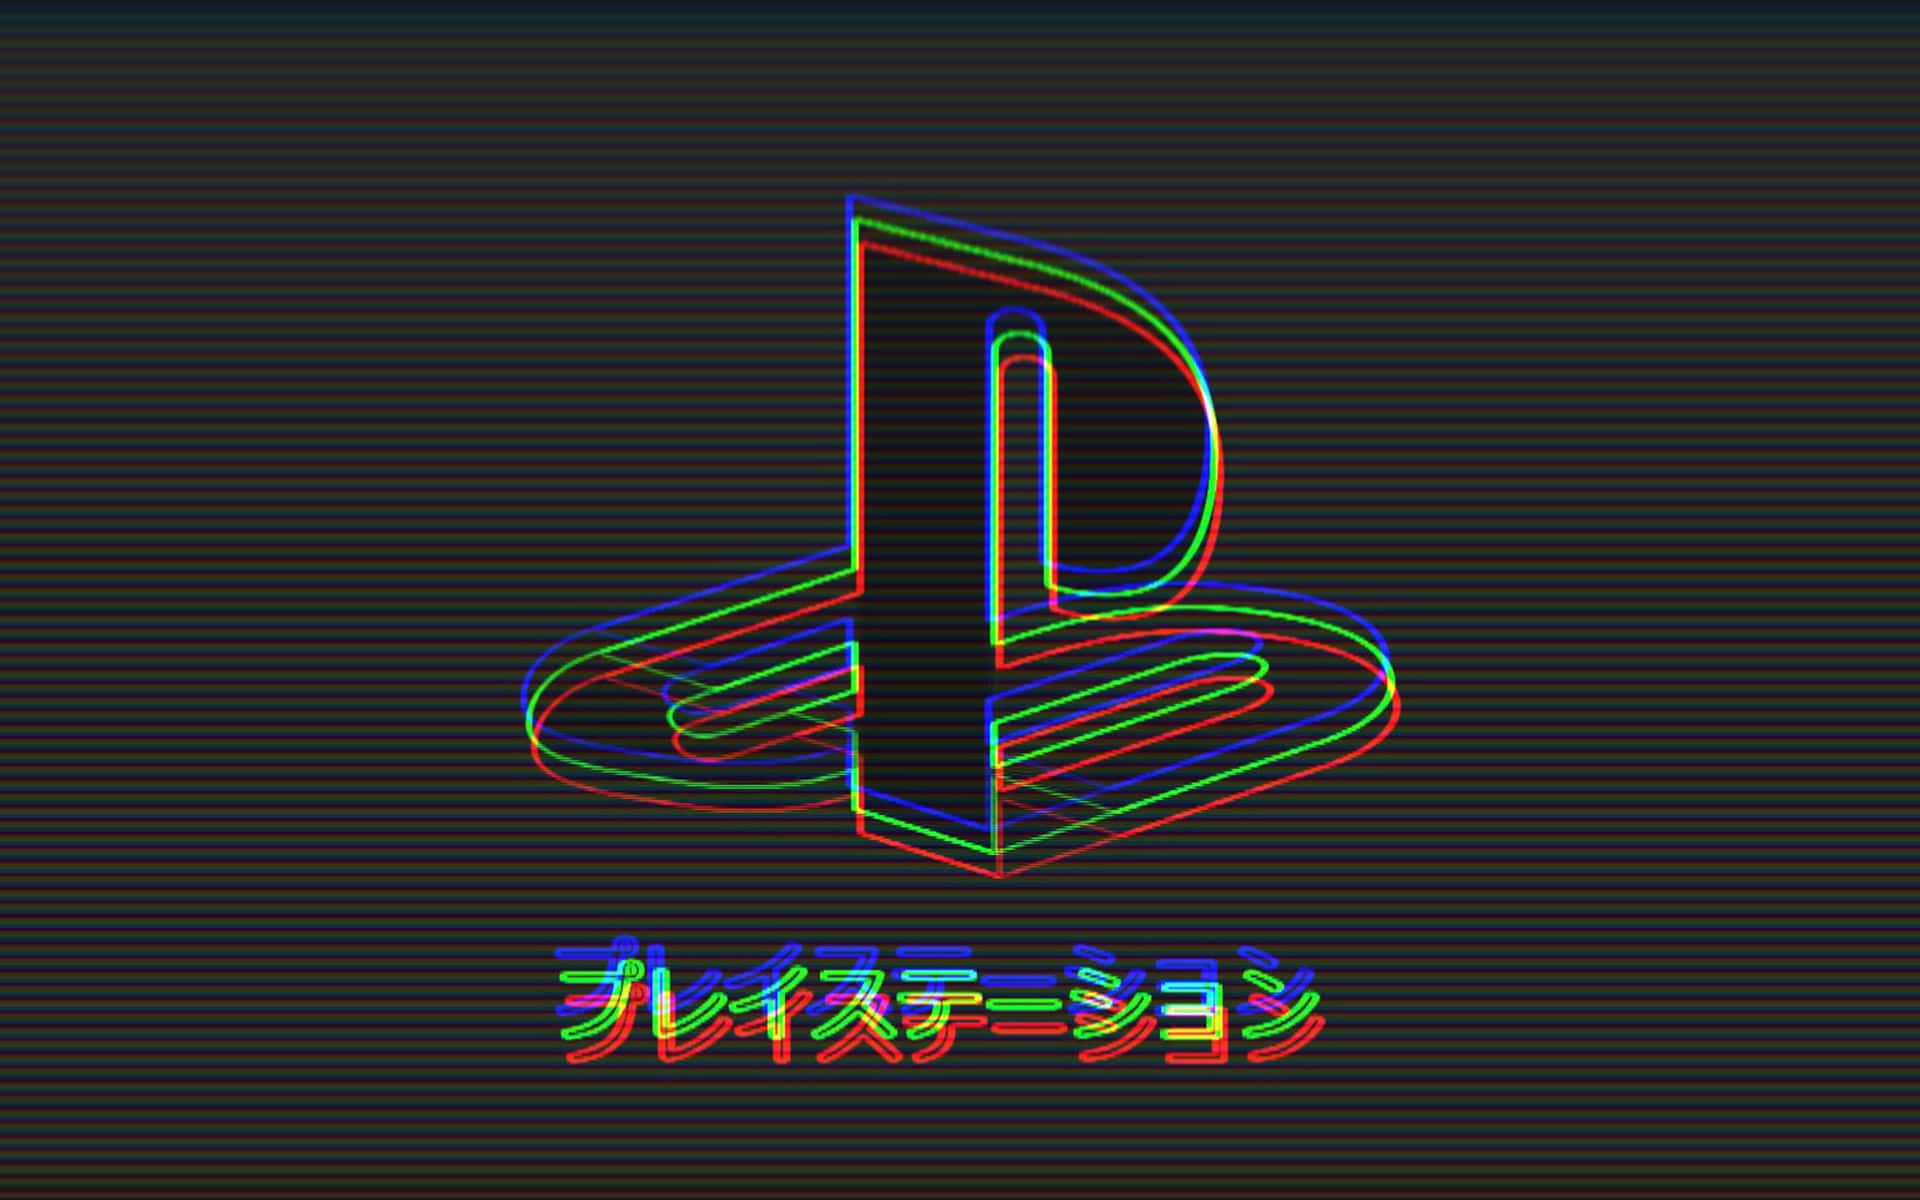 Playstation Logo wallpaper by antoinebernard on DeviantArt